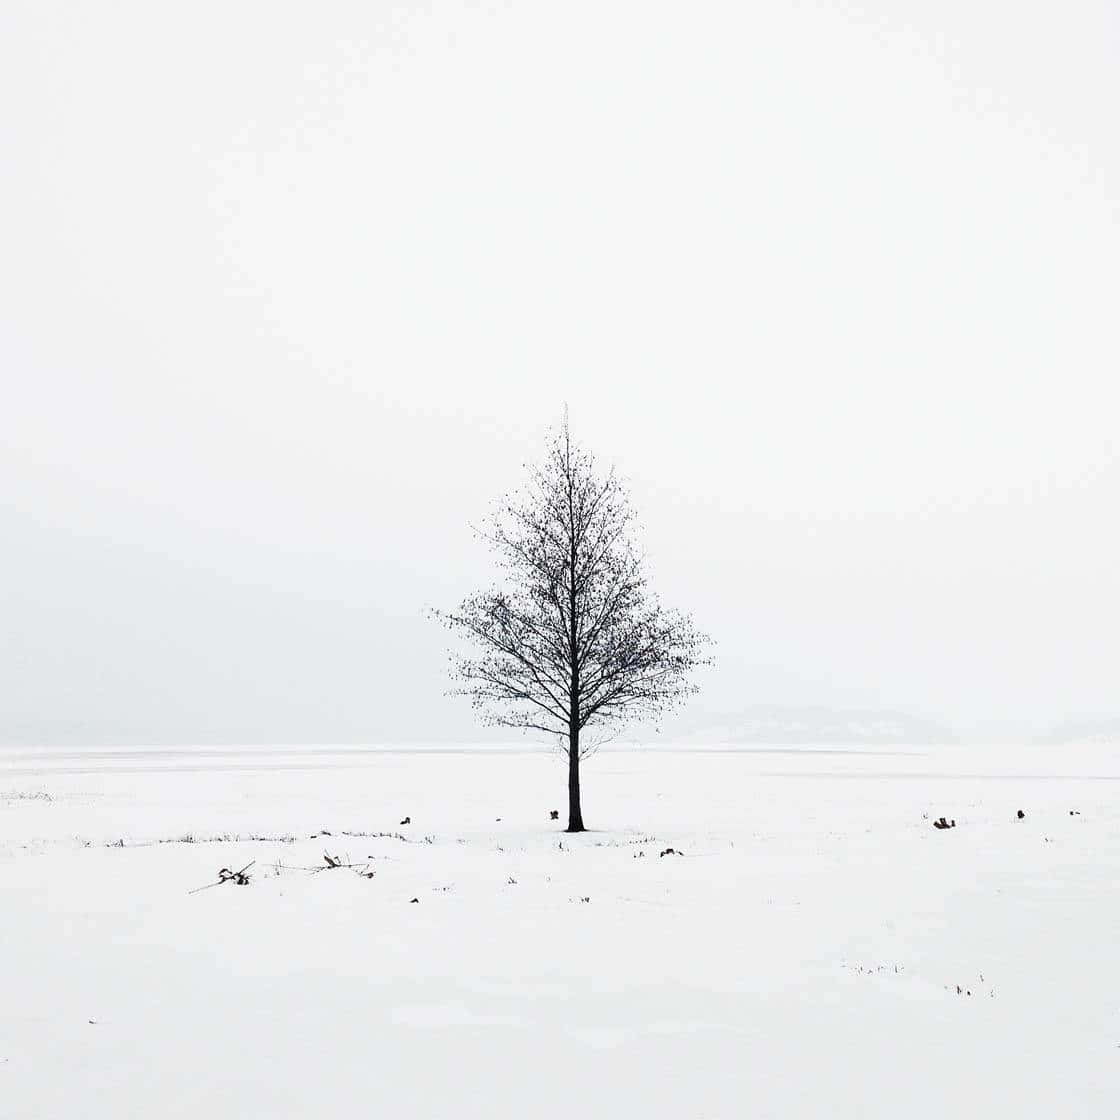 Minimalistisk træ i snebilleder